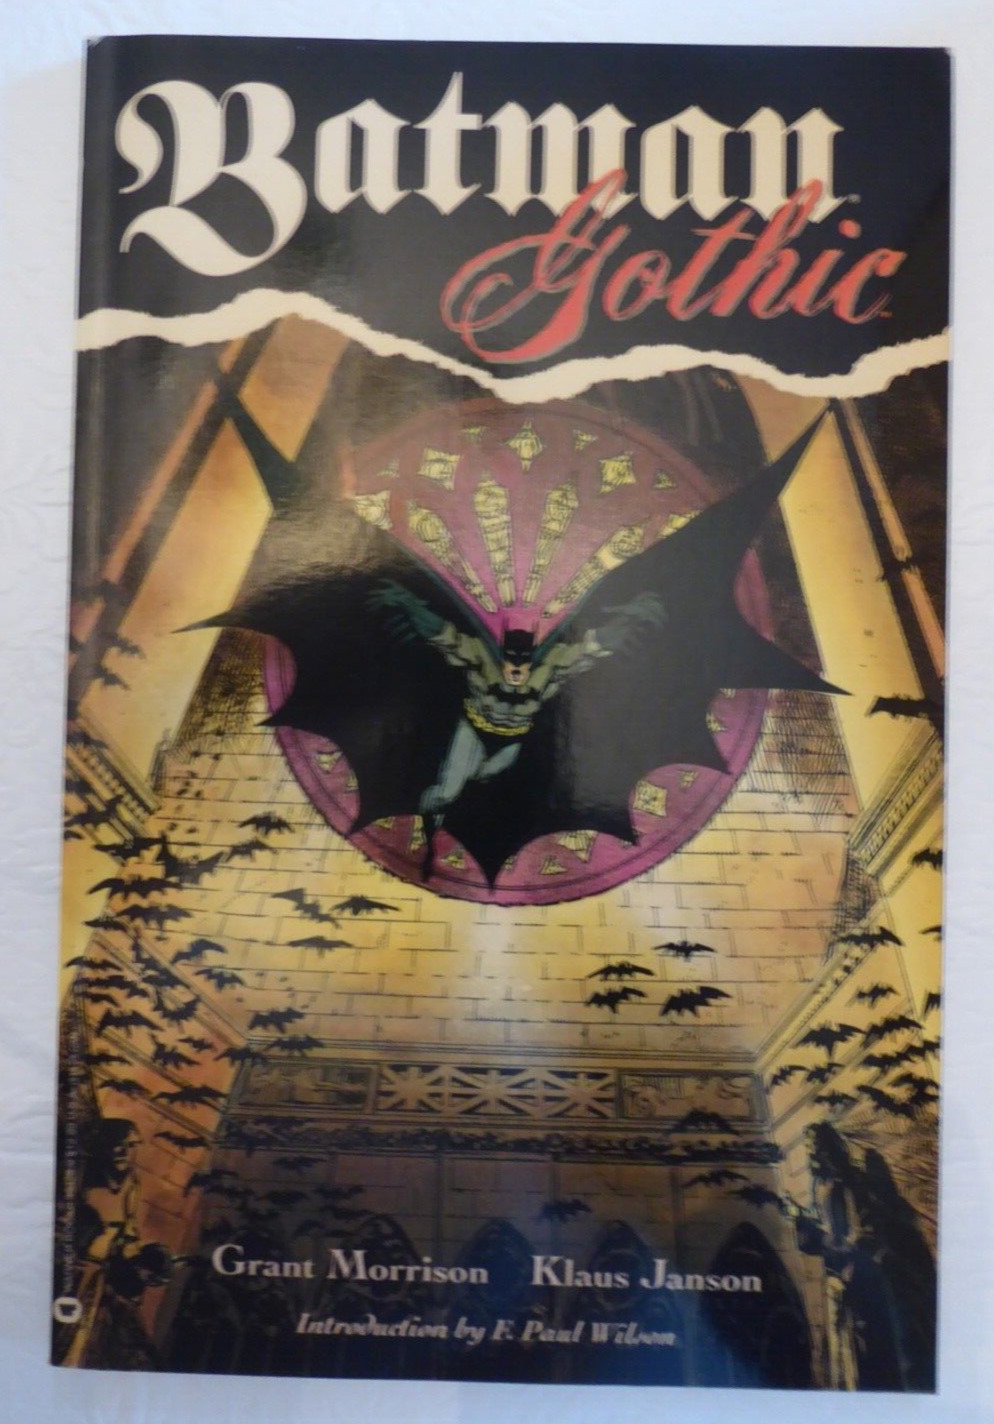 Batman - Gothic (2007) by Grant Morrison/Klaus